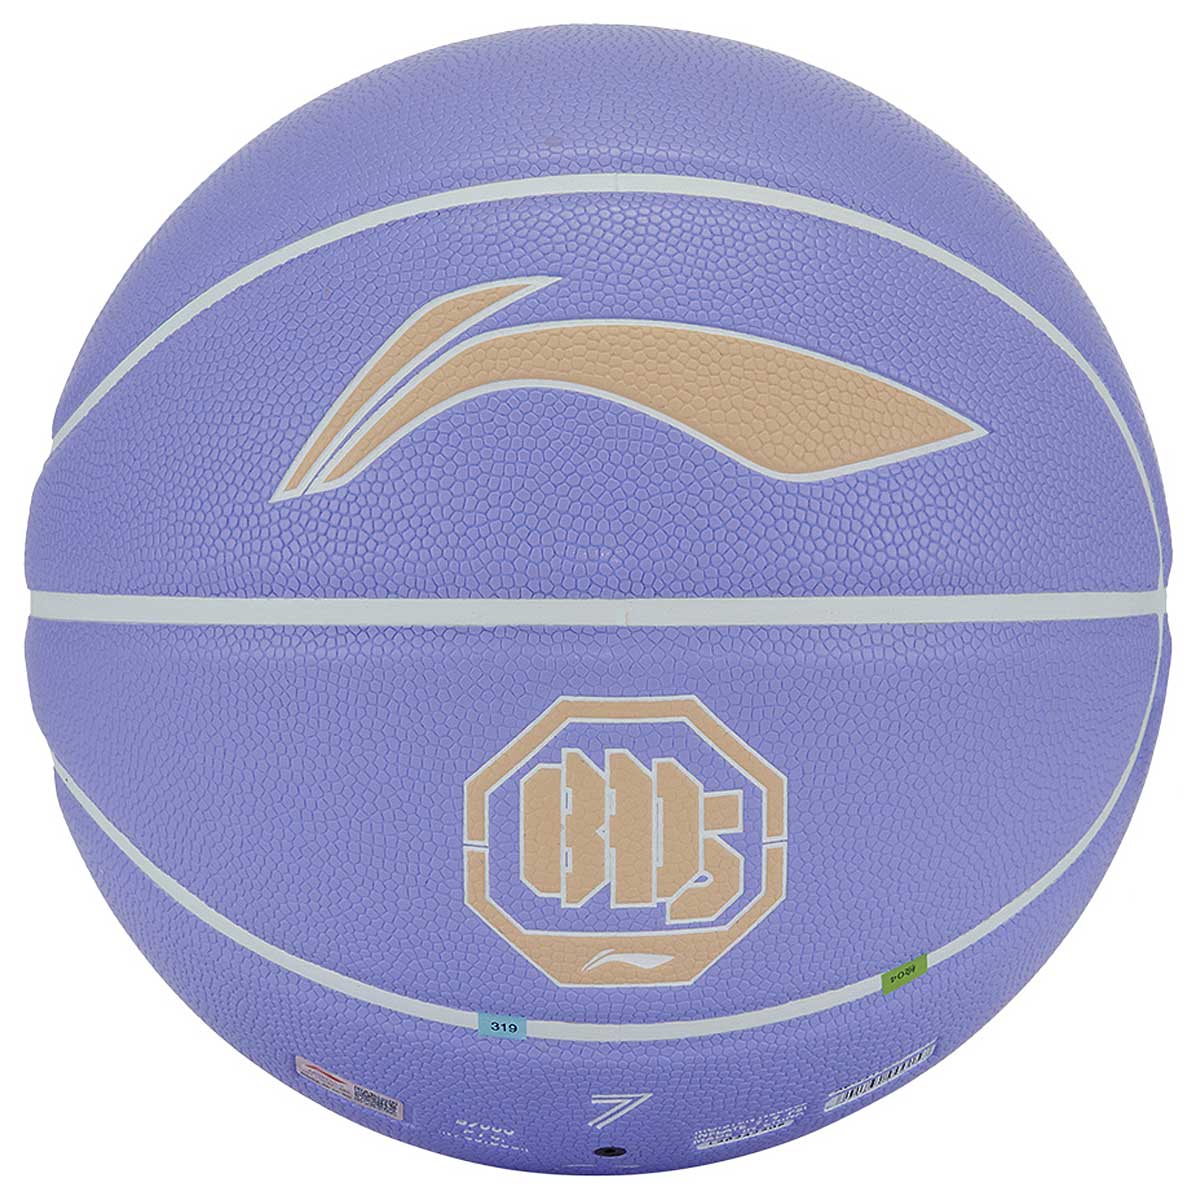 Image of Li-ning Badfive Basketball, Lilac